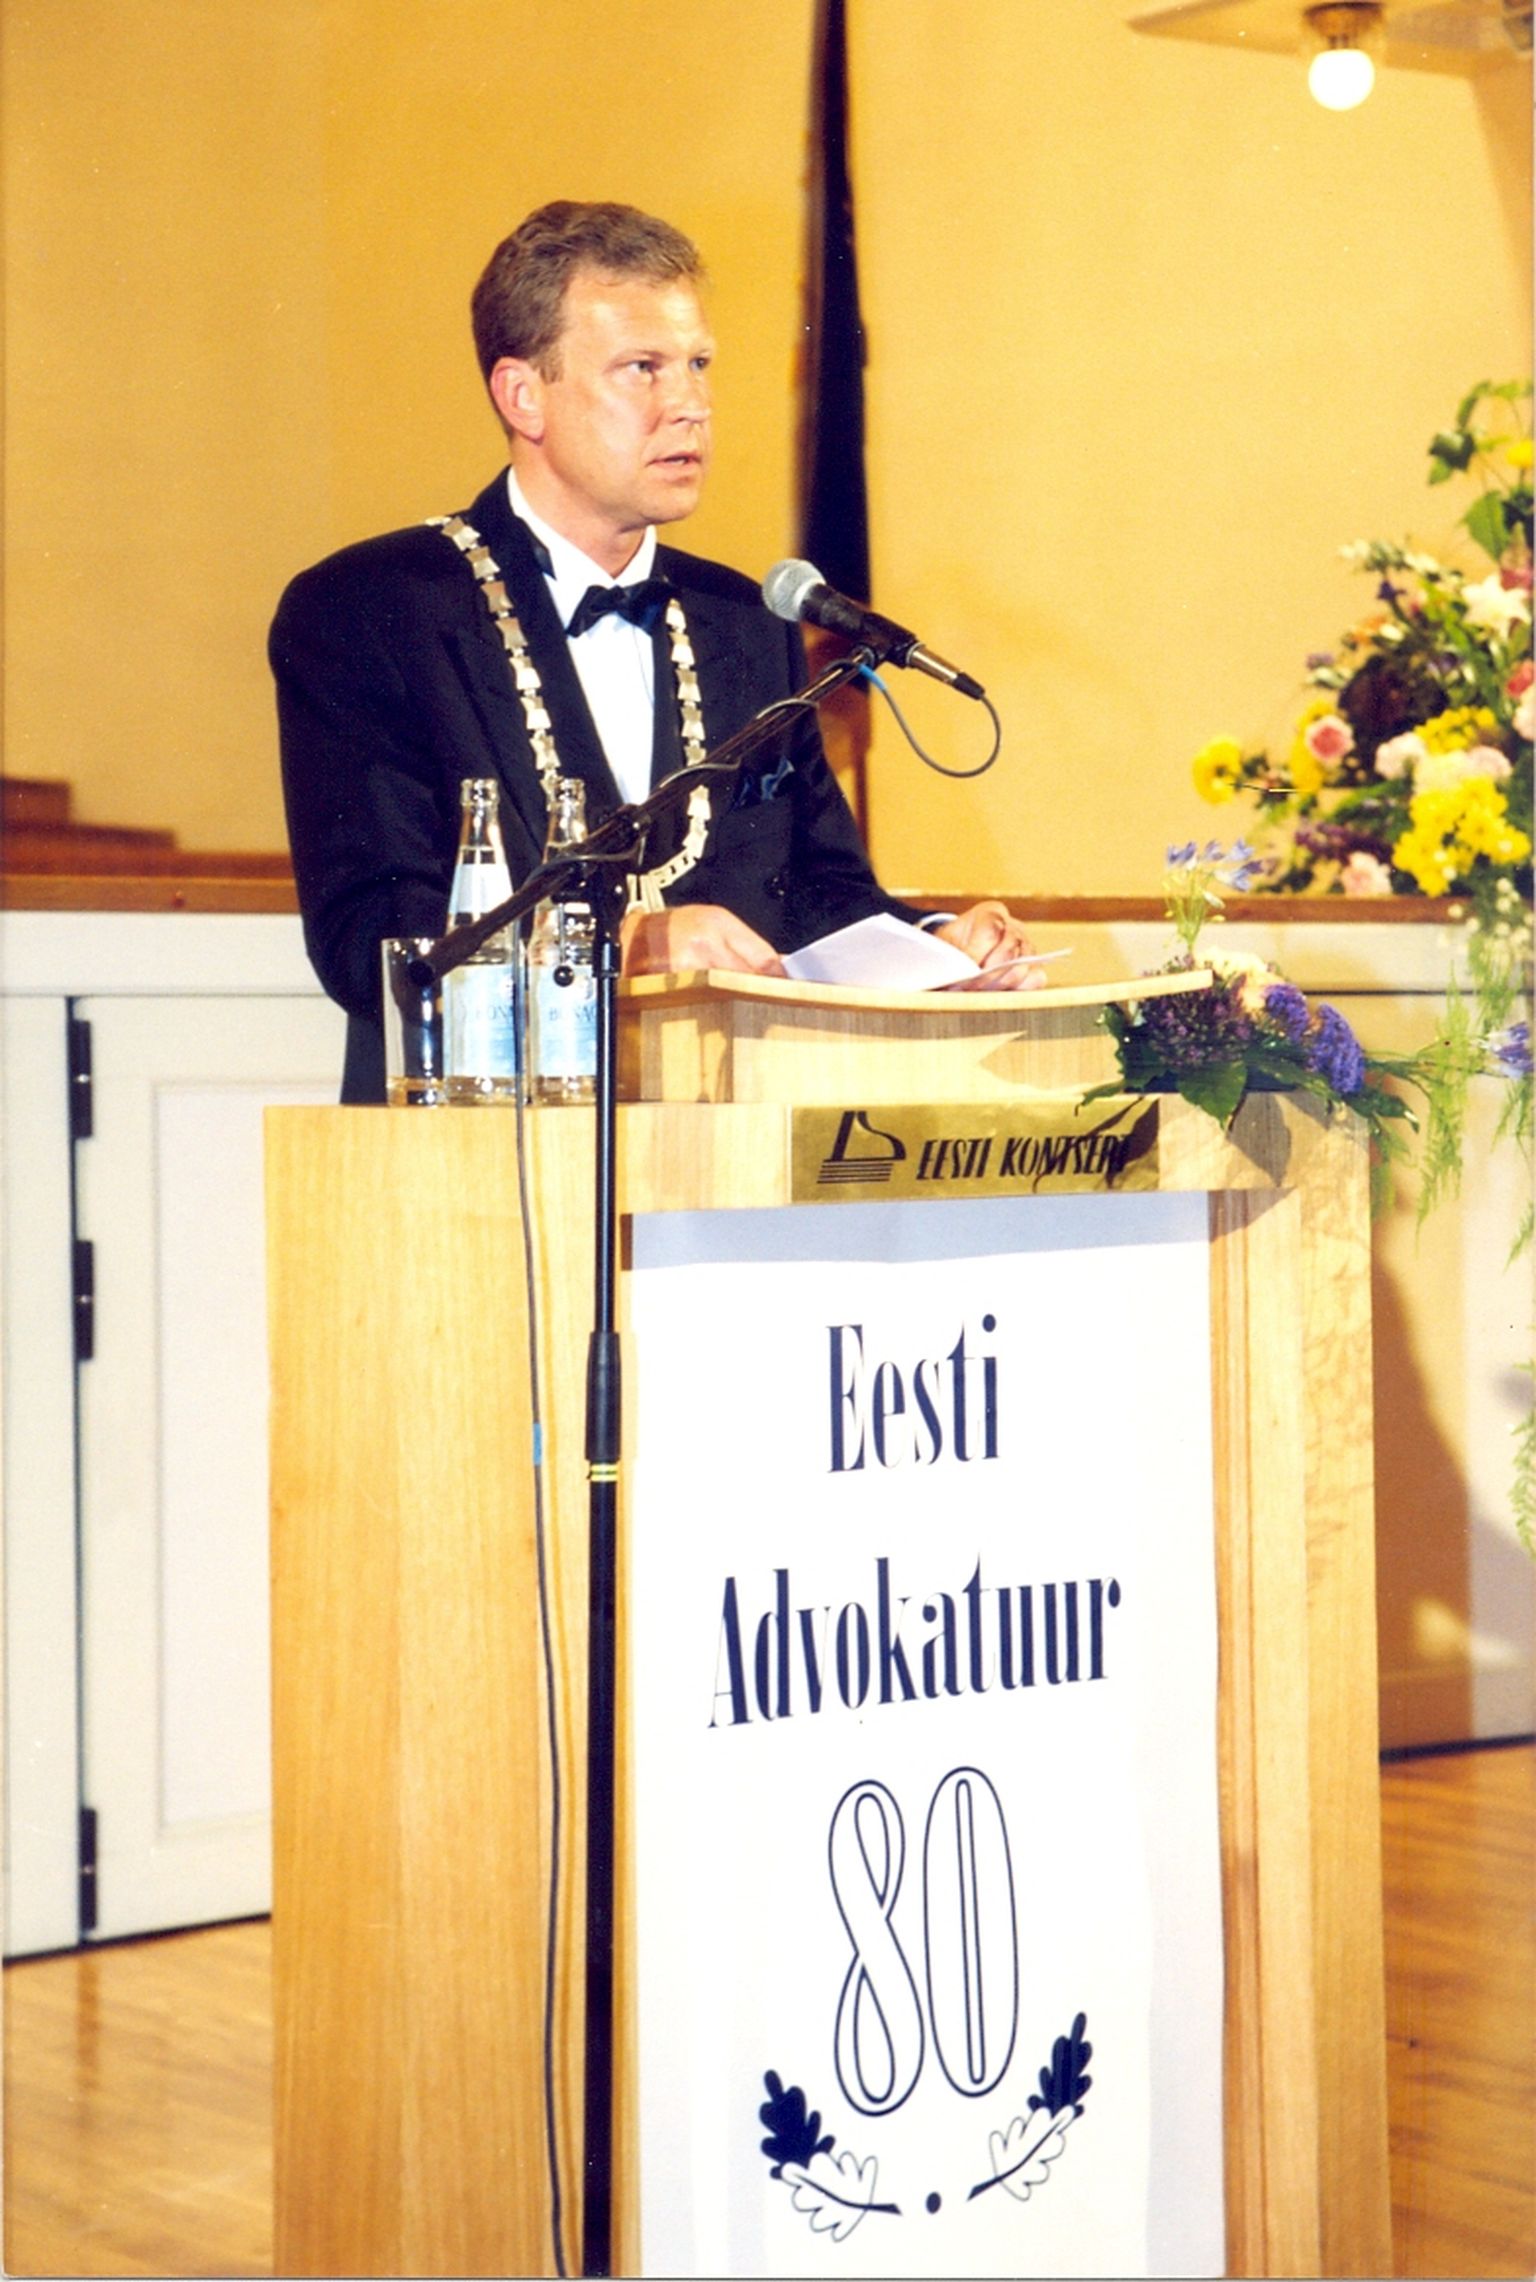 Eesti Advokatuuri toonane esimees Aare Tark peab kõnet ühenduse 80. aastapäeval 14. juunil 1999.